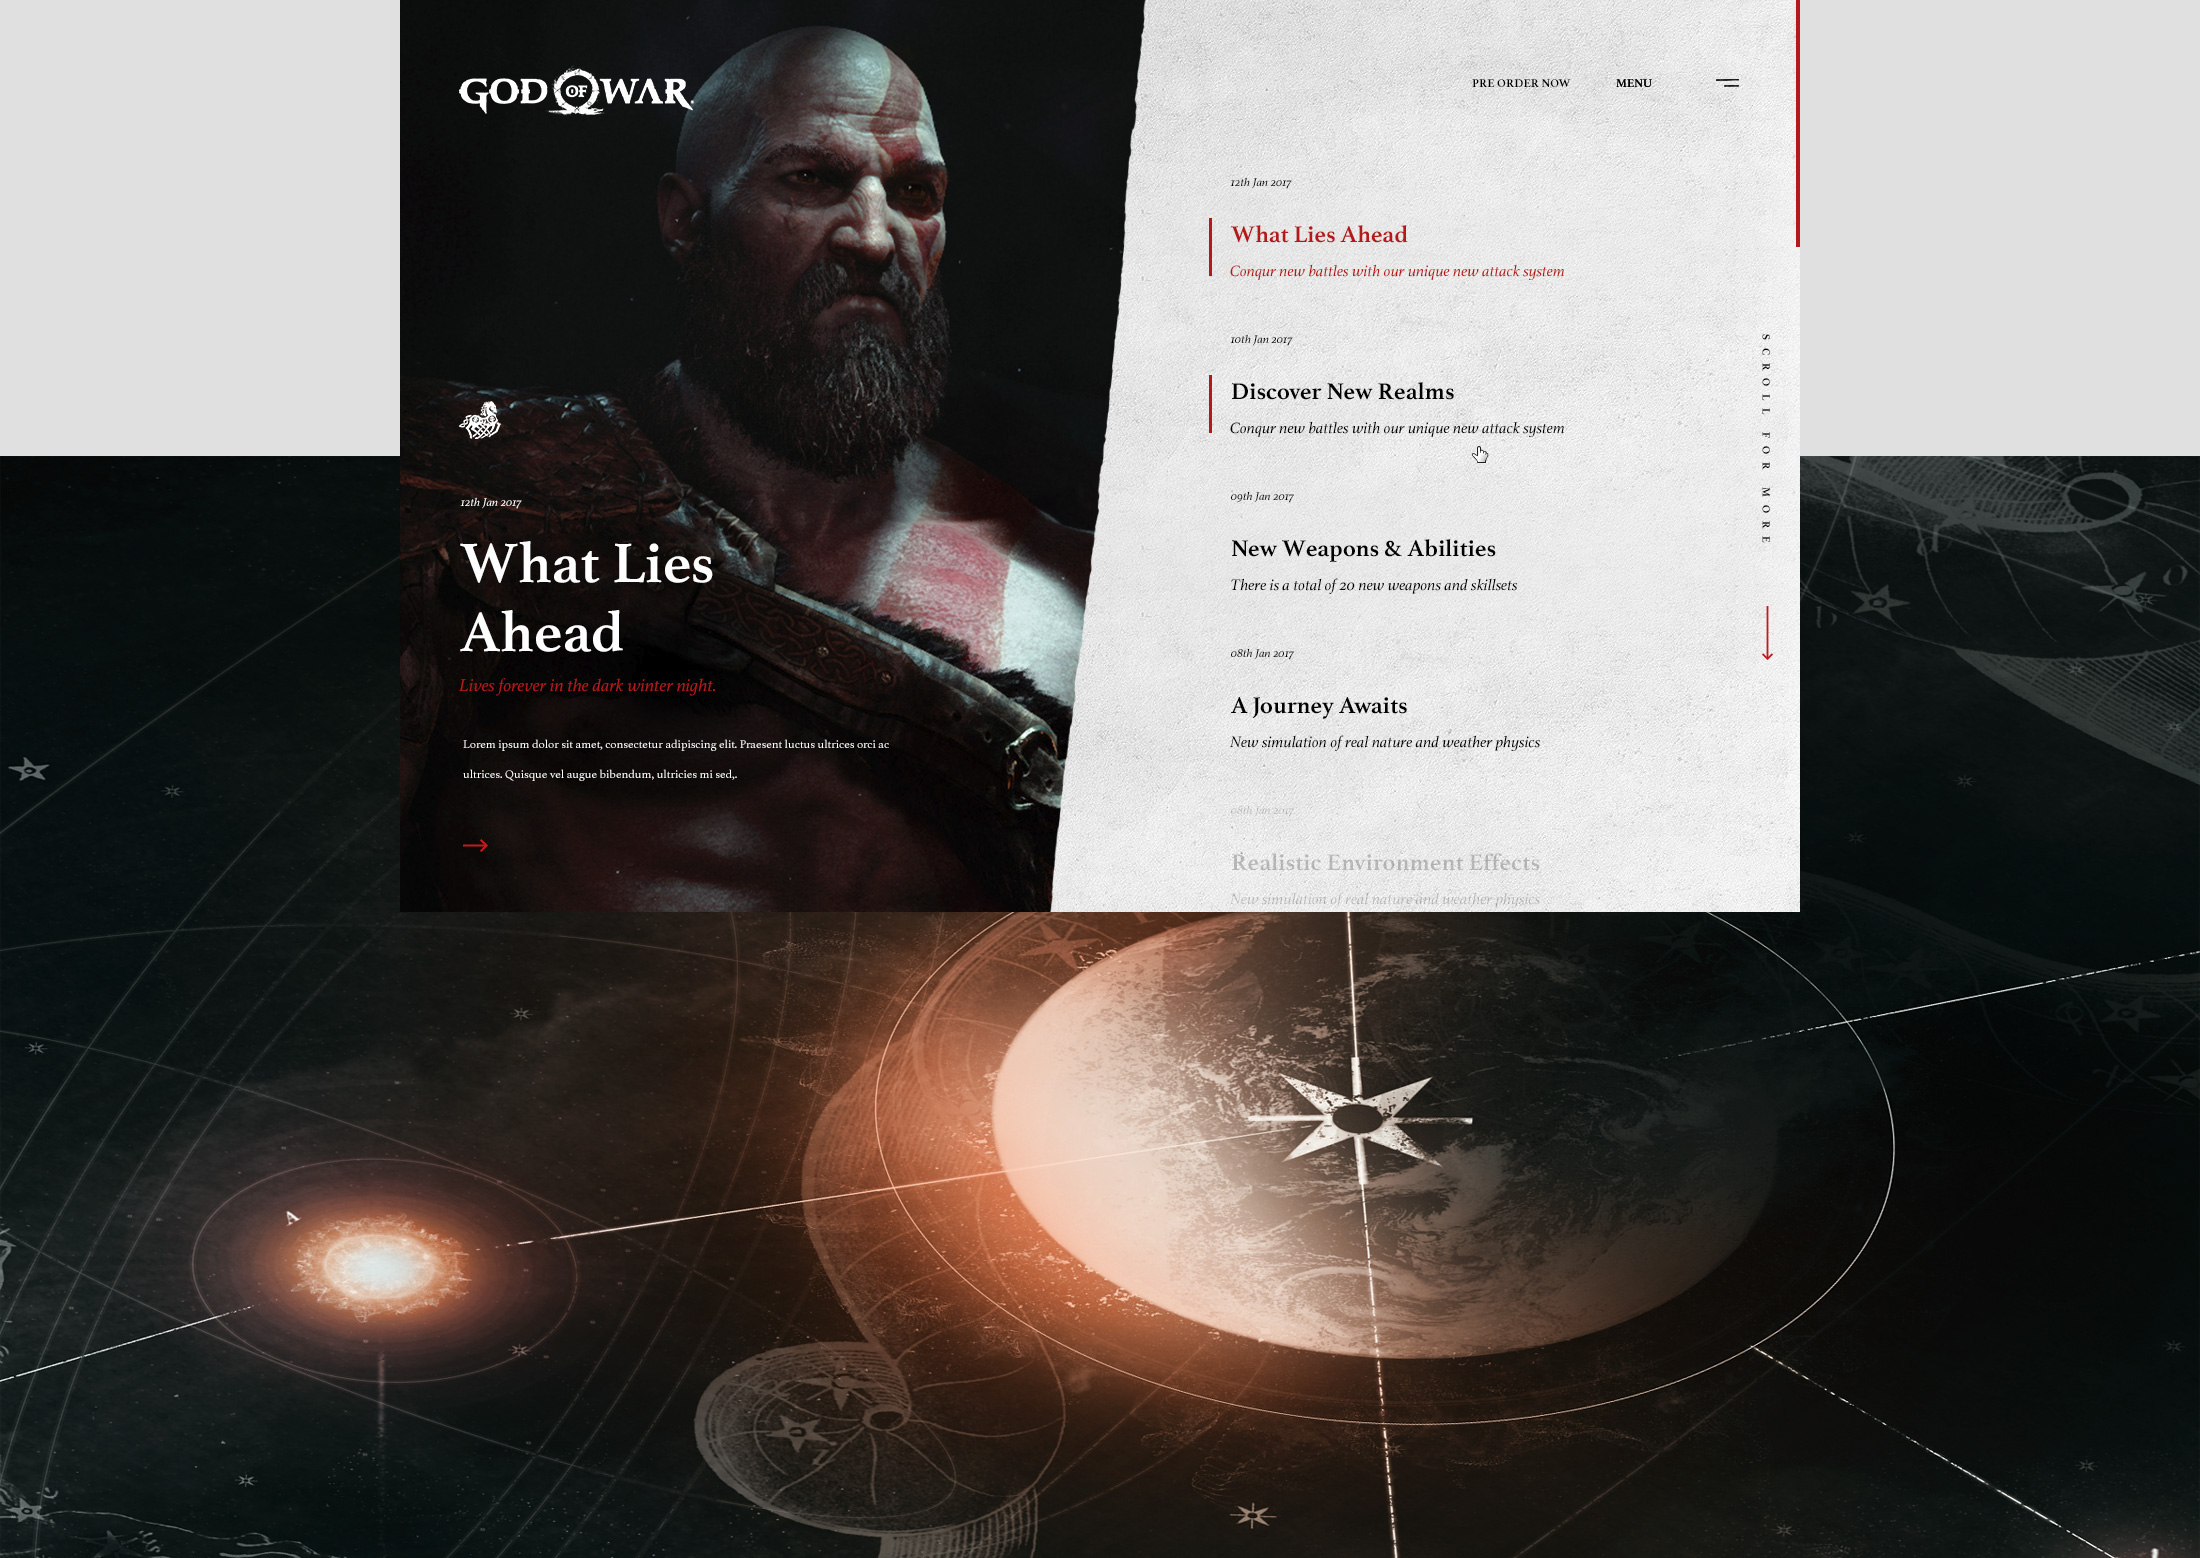 Web Design & UI/UX for the God of War 4 game